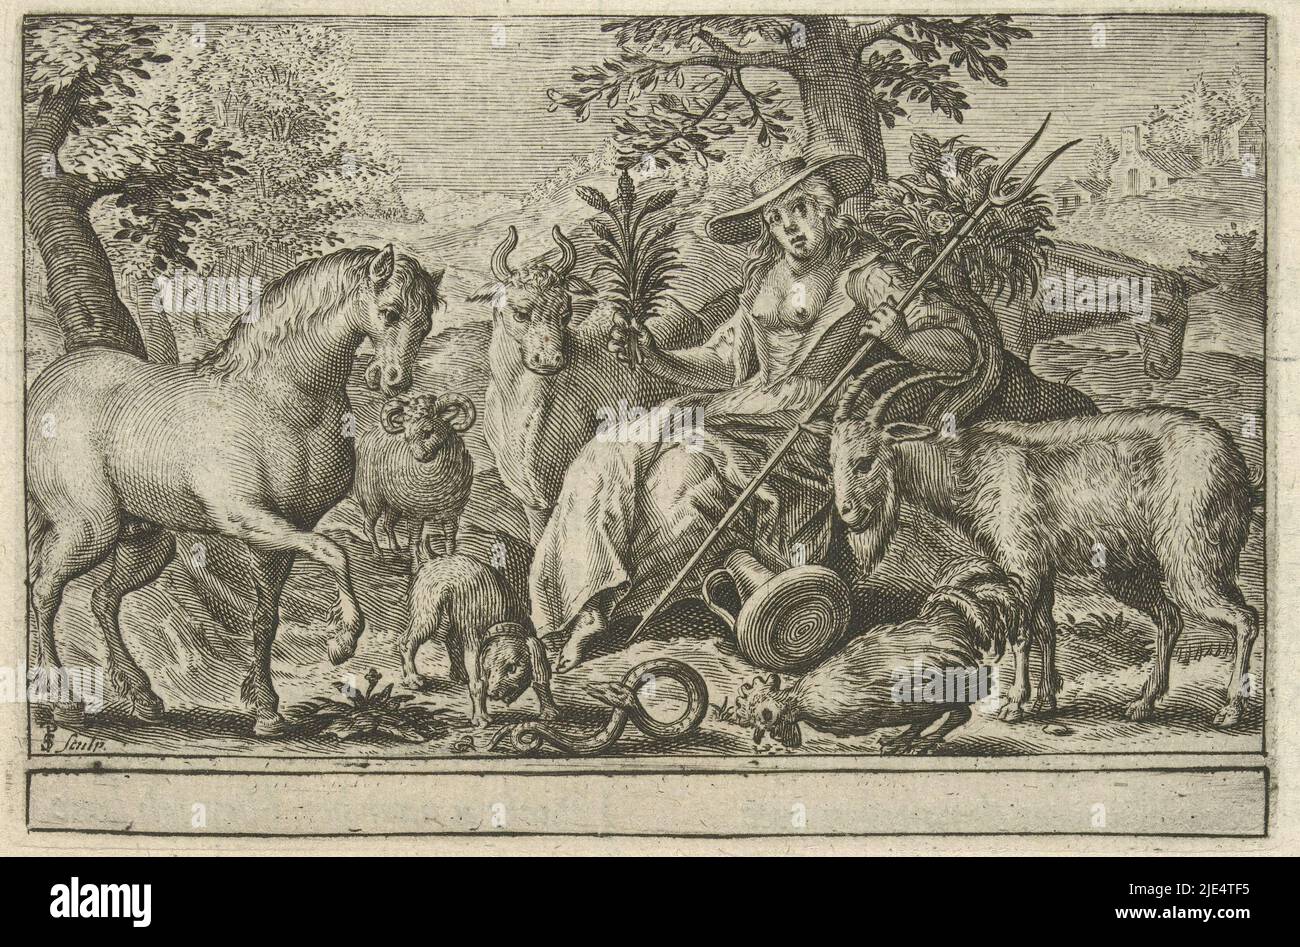 Paisaje con la diosa Pales (diosa romana de los pastores, la agricultura y la ganadería), rodeado de varios animales. Con un margen vacío debajo de la representación. Debajo de la impresión y en el reverso en holandés, Pales., fabricante de impresión: Simon van de Passe, (mencionado en el objeto), desconocido, 1627, papel, grabado, impresión de tipografía, al. 83 mm x al. 125 mm, al. 216 mm x al. 157 mm Foto de stock